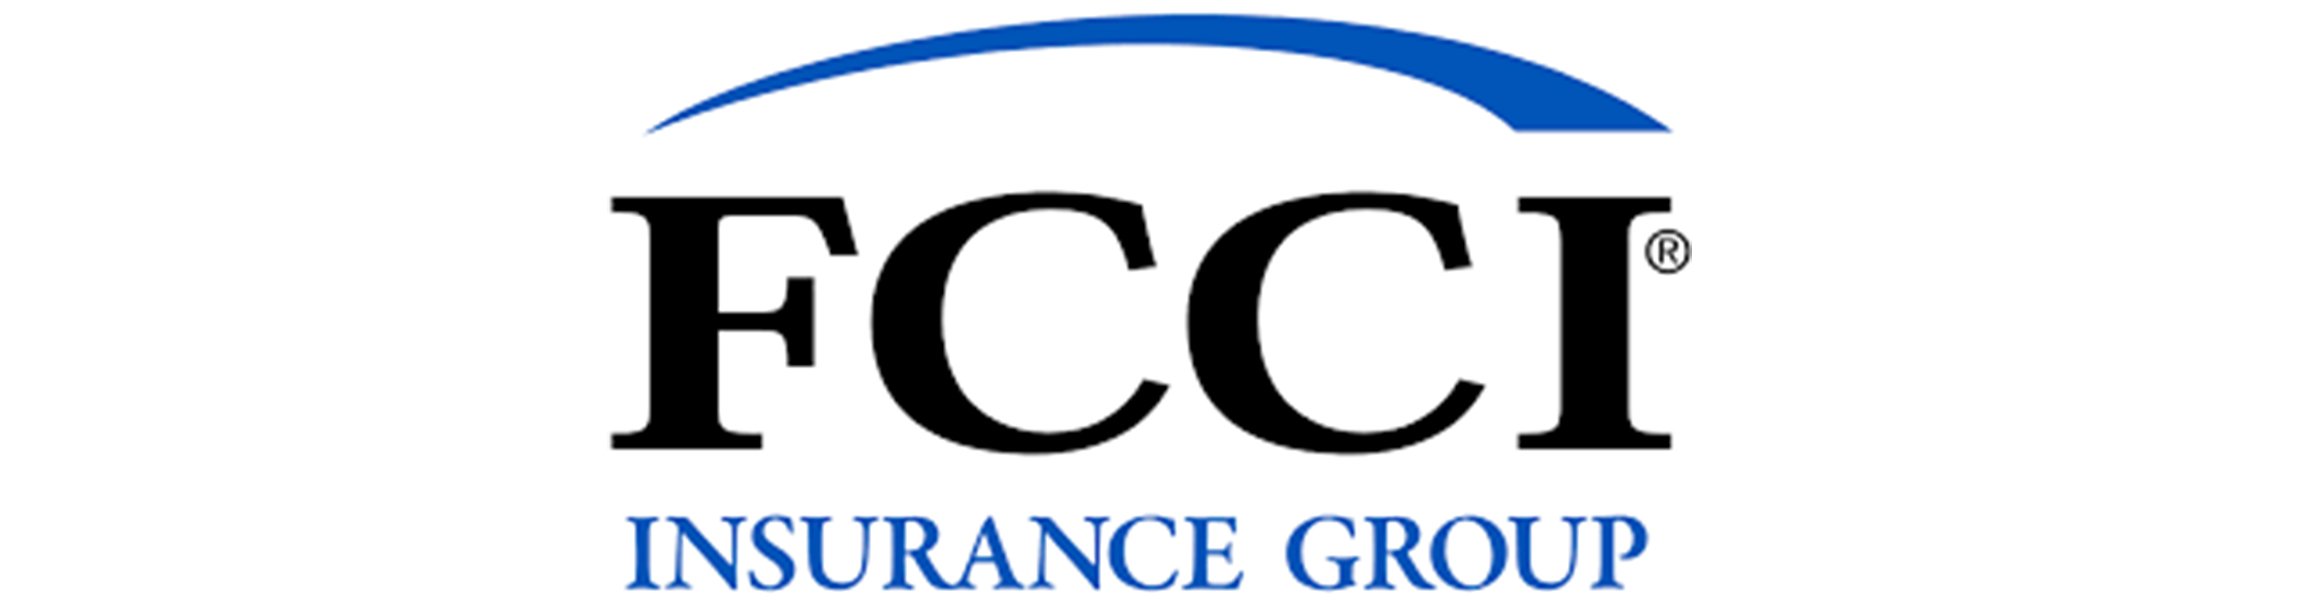 fcci-insurance